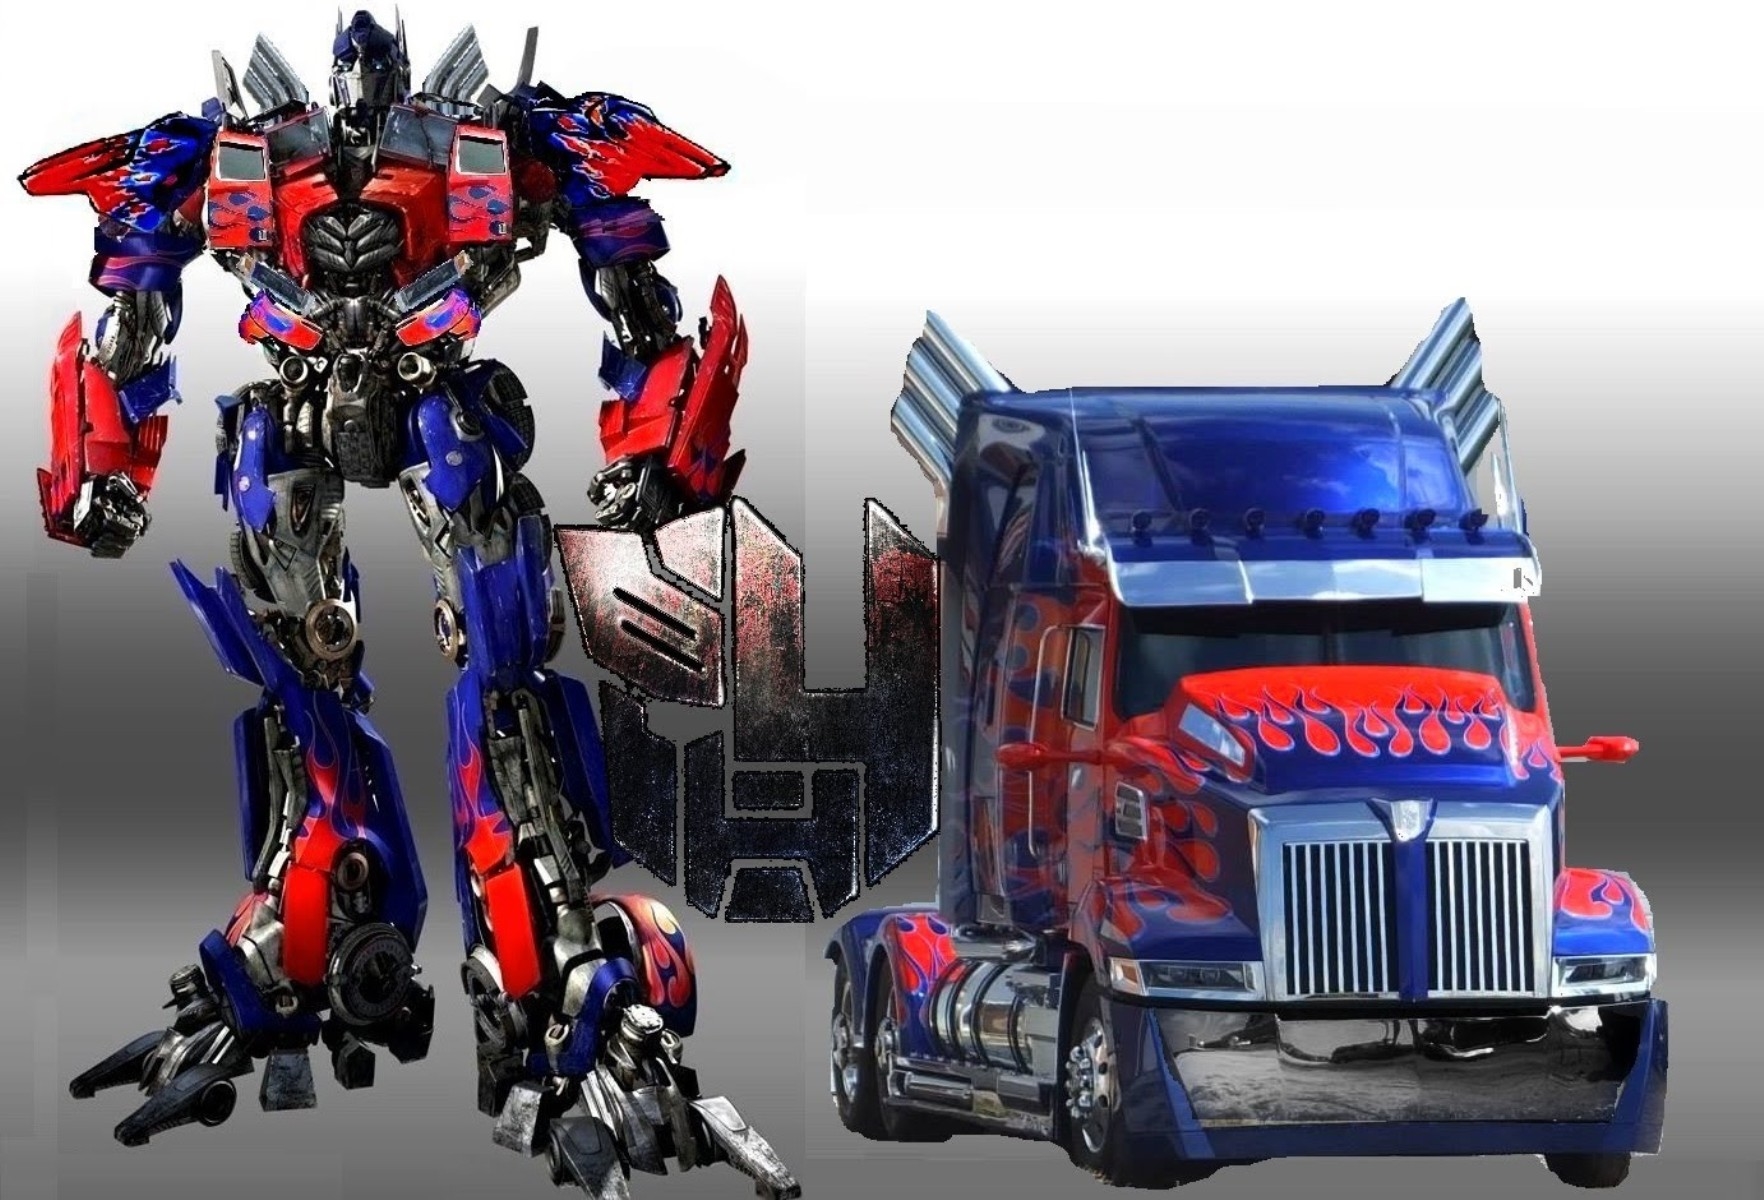 Optimus Prime Truck Autobots Transformers - Optimus Prime Truck Transformer  - 1764x1200 Wallpaper 